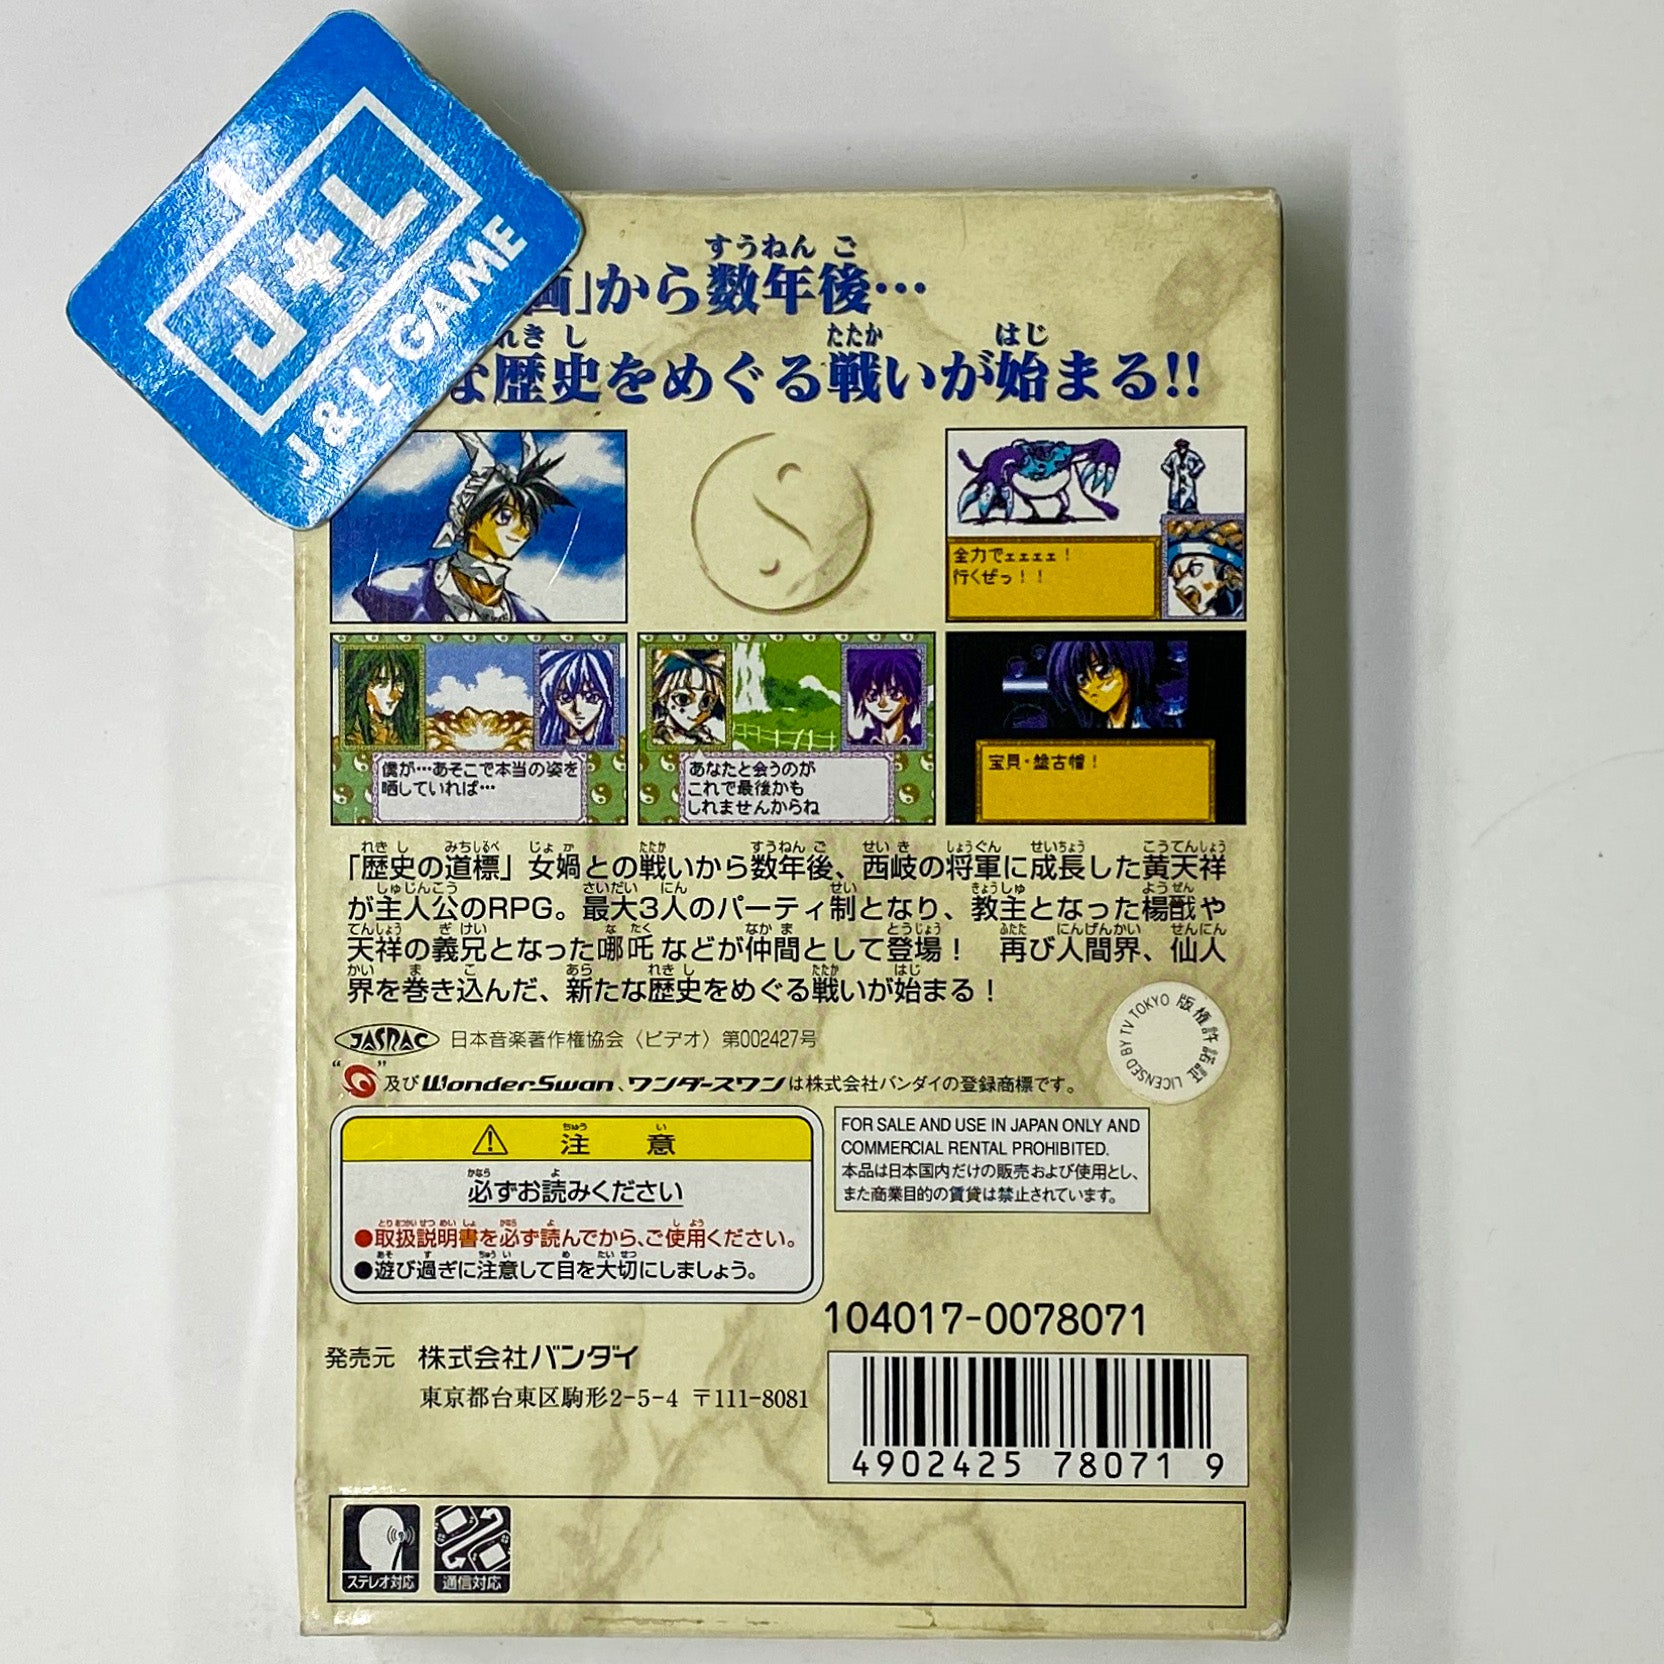 Senkaiden Ni - (WSC) WonderSwan Color [Pre-Owned] (Japanese Import) Video Games Bandai   